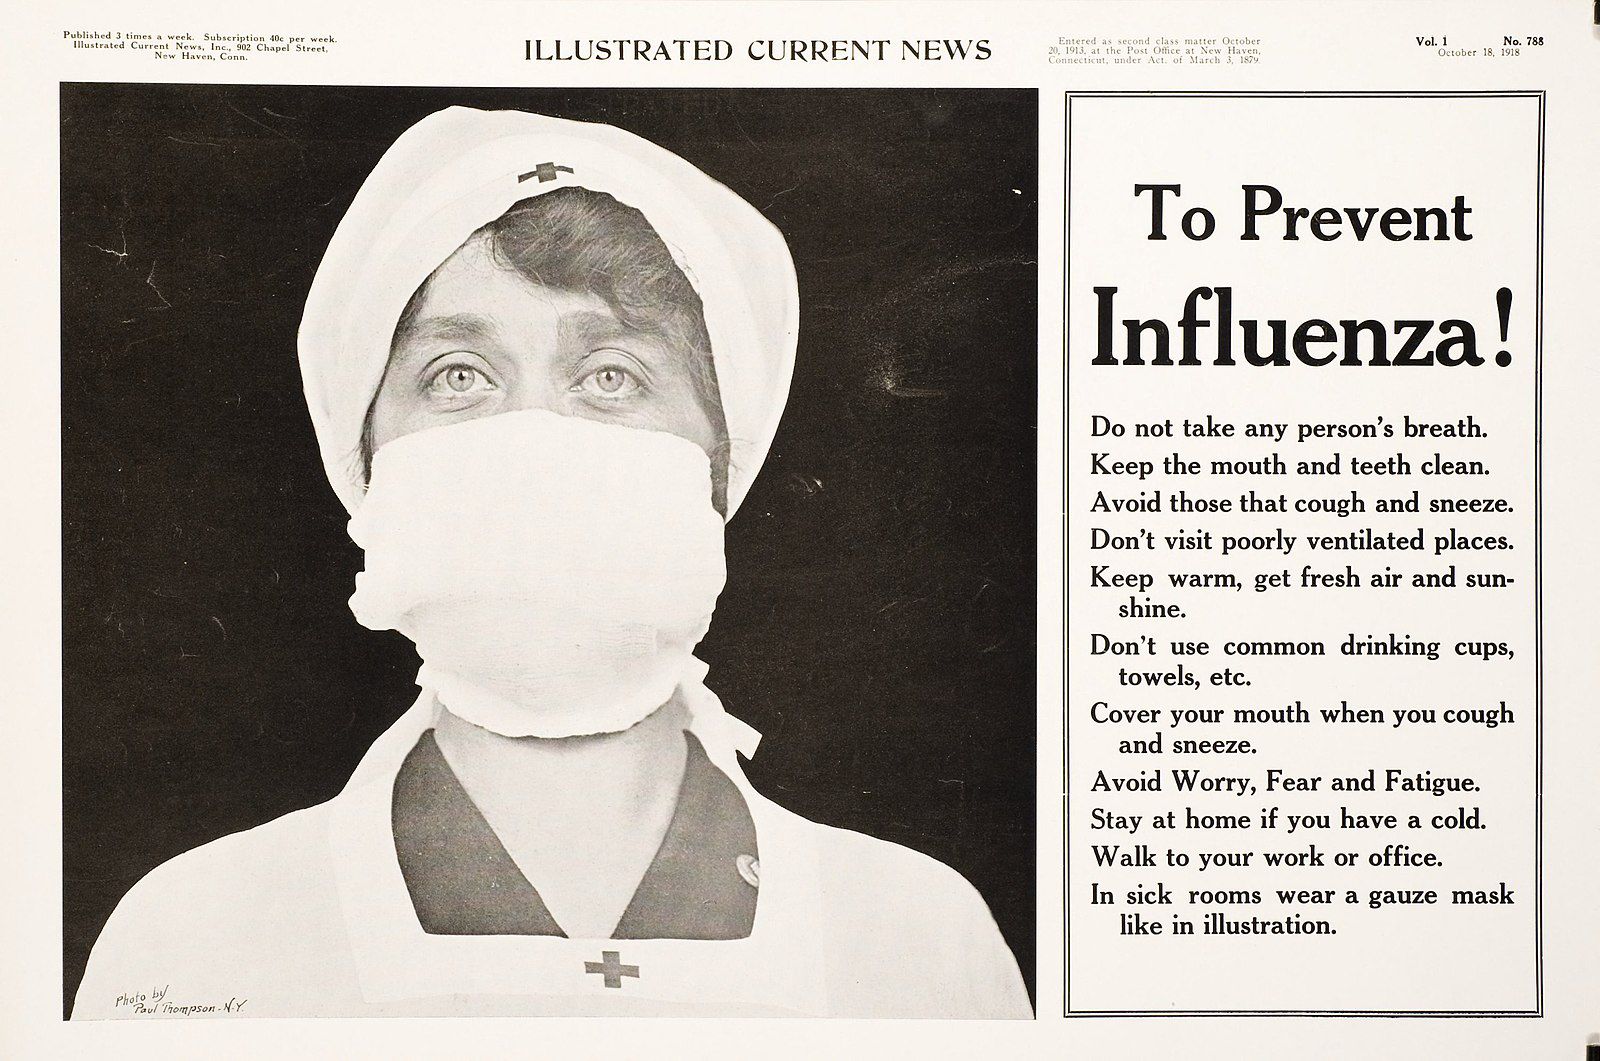 „To Prevent Influzenza!“ Anzeige in: „Illustrated Current News“, 18. Oktober 1918, in der für das Tragen eines Mundschutzes zur Prävention einer Grippe-Infektion geworben wird.<br />Foto: unbekannt. Quelle: [https://circulatingnow.nlm.nih.gov/2015/01/15/influenza-precautions-then-and-now/to-prevent-influenza-a108877/ National Library of Medicine] / [https://commons.wikimedia.org/wiki/File:To-prevent-influenza-a108877.jpg Wikimedia Commons] [15.11.2022] public domain